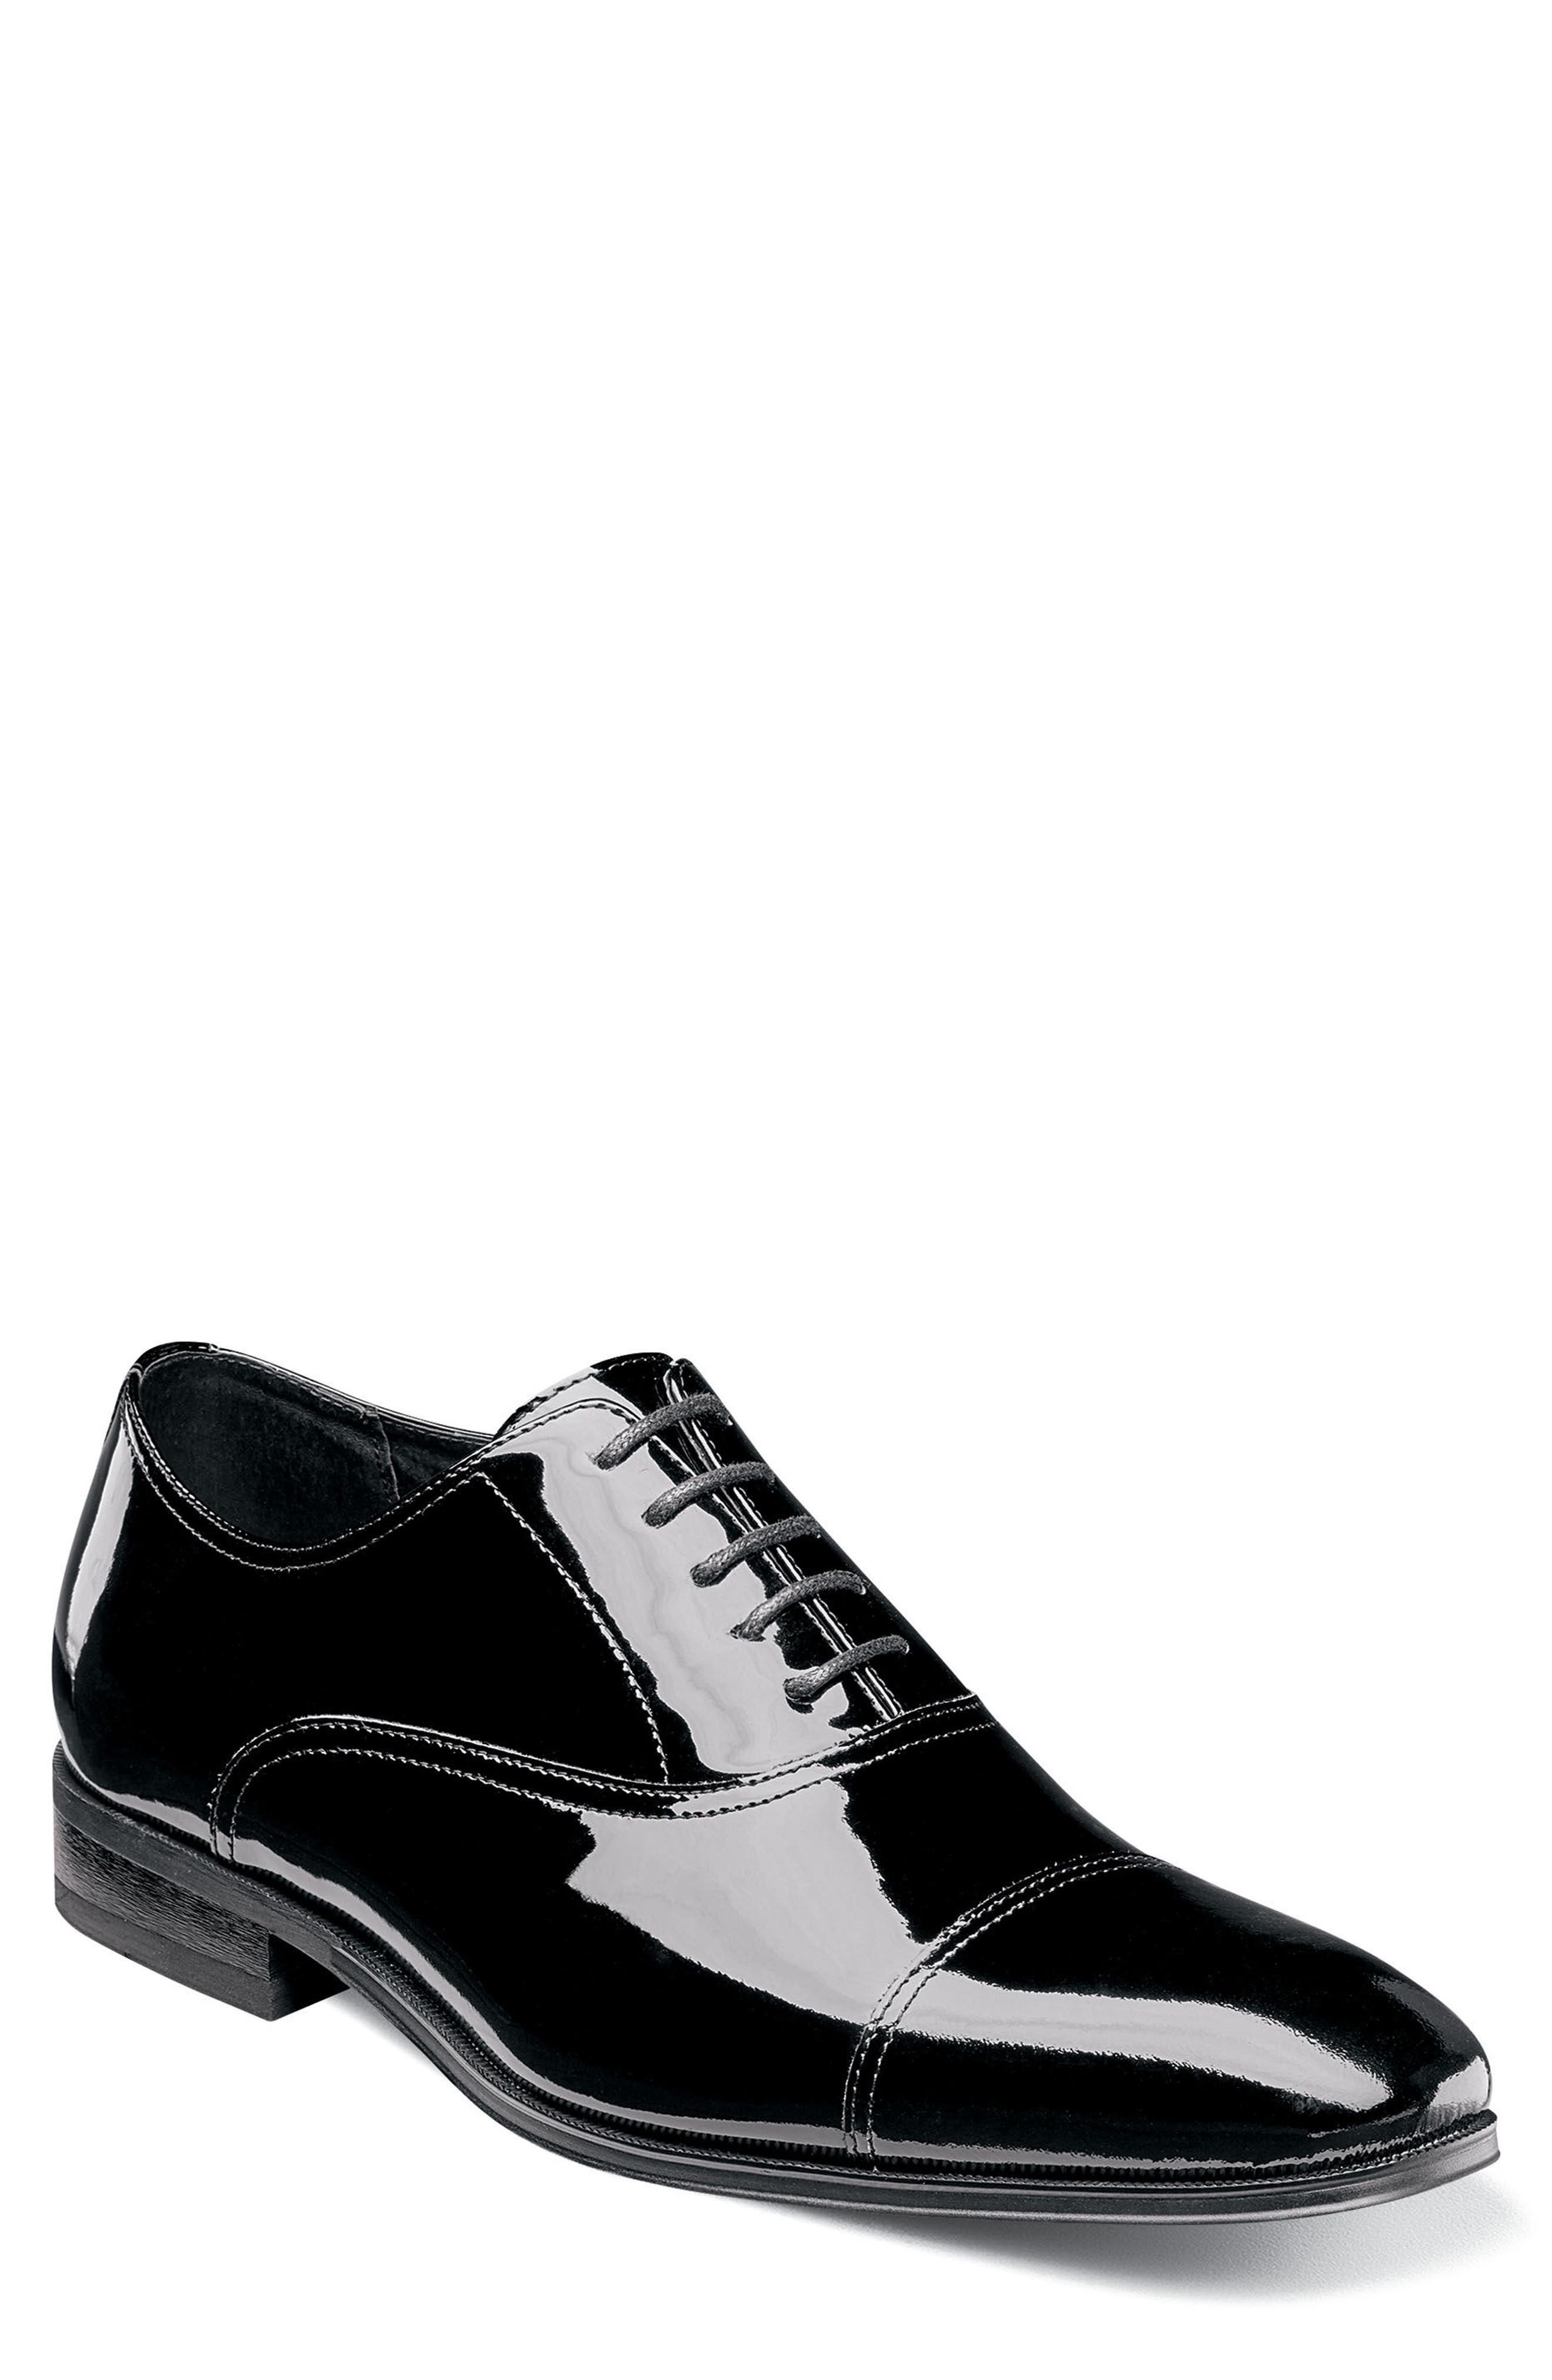 New men Lace Up Oxfords Mens Dress Tuxedo Formal Shoes Cap Toe Patent Leather Sz 